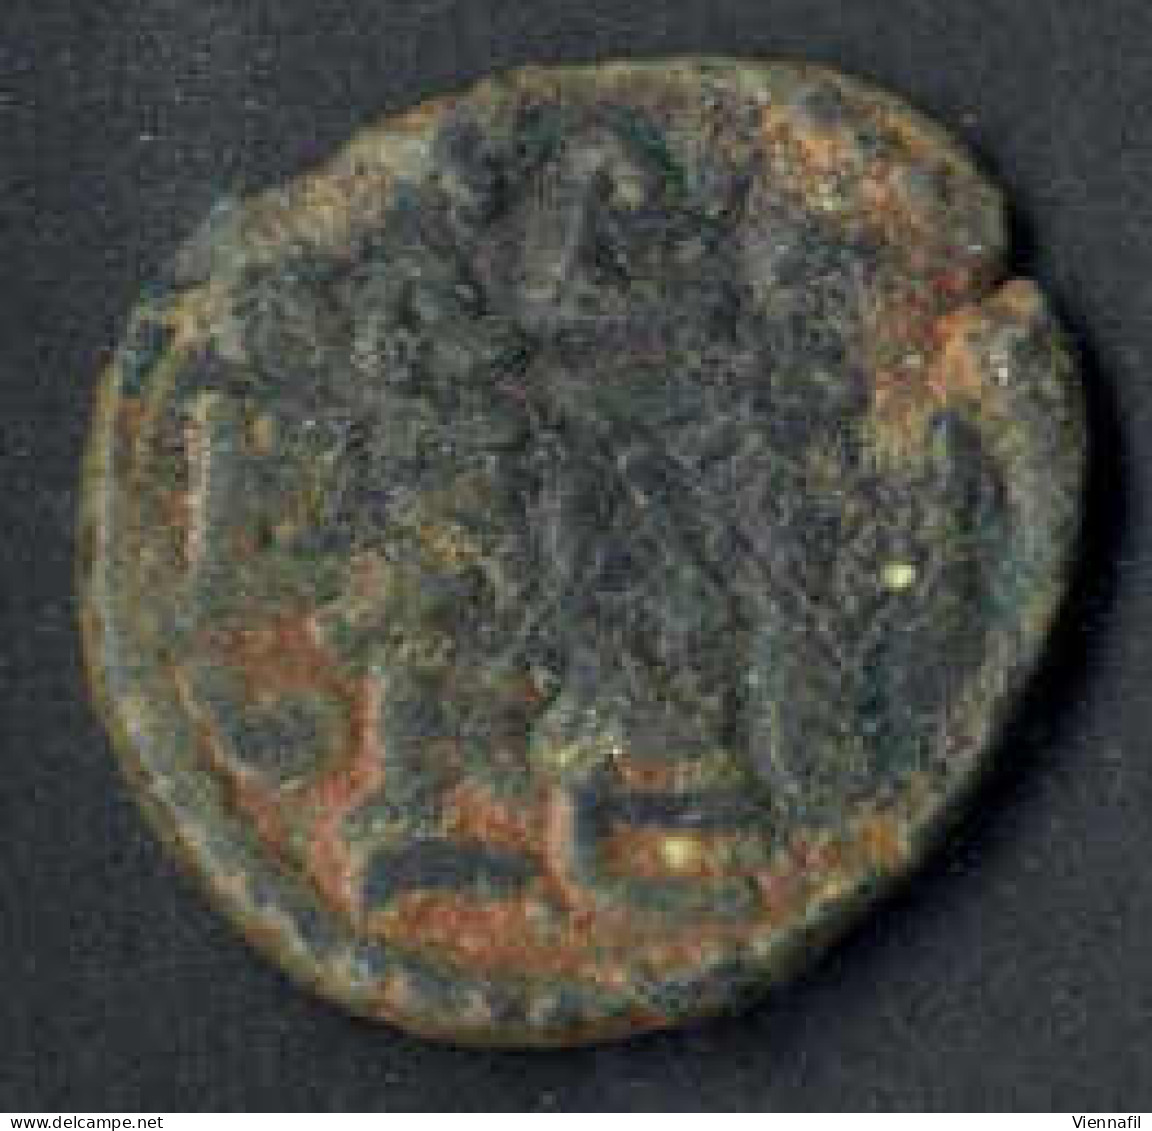 Anonym Nach 79-132AH, Fals, Ohne Jahr, Hims, Sehr Schön, Selten, 3 Stück - Islamische Münzen